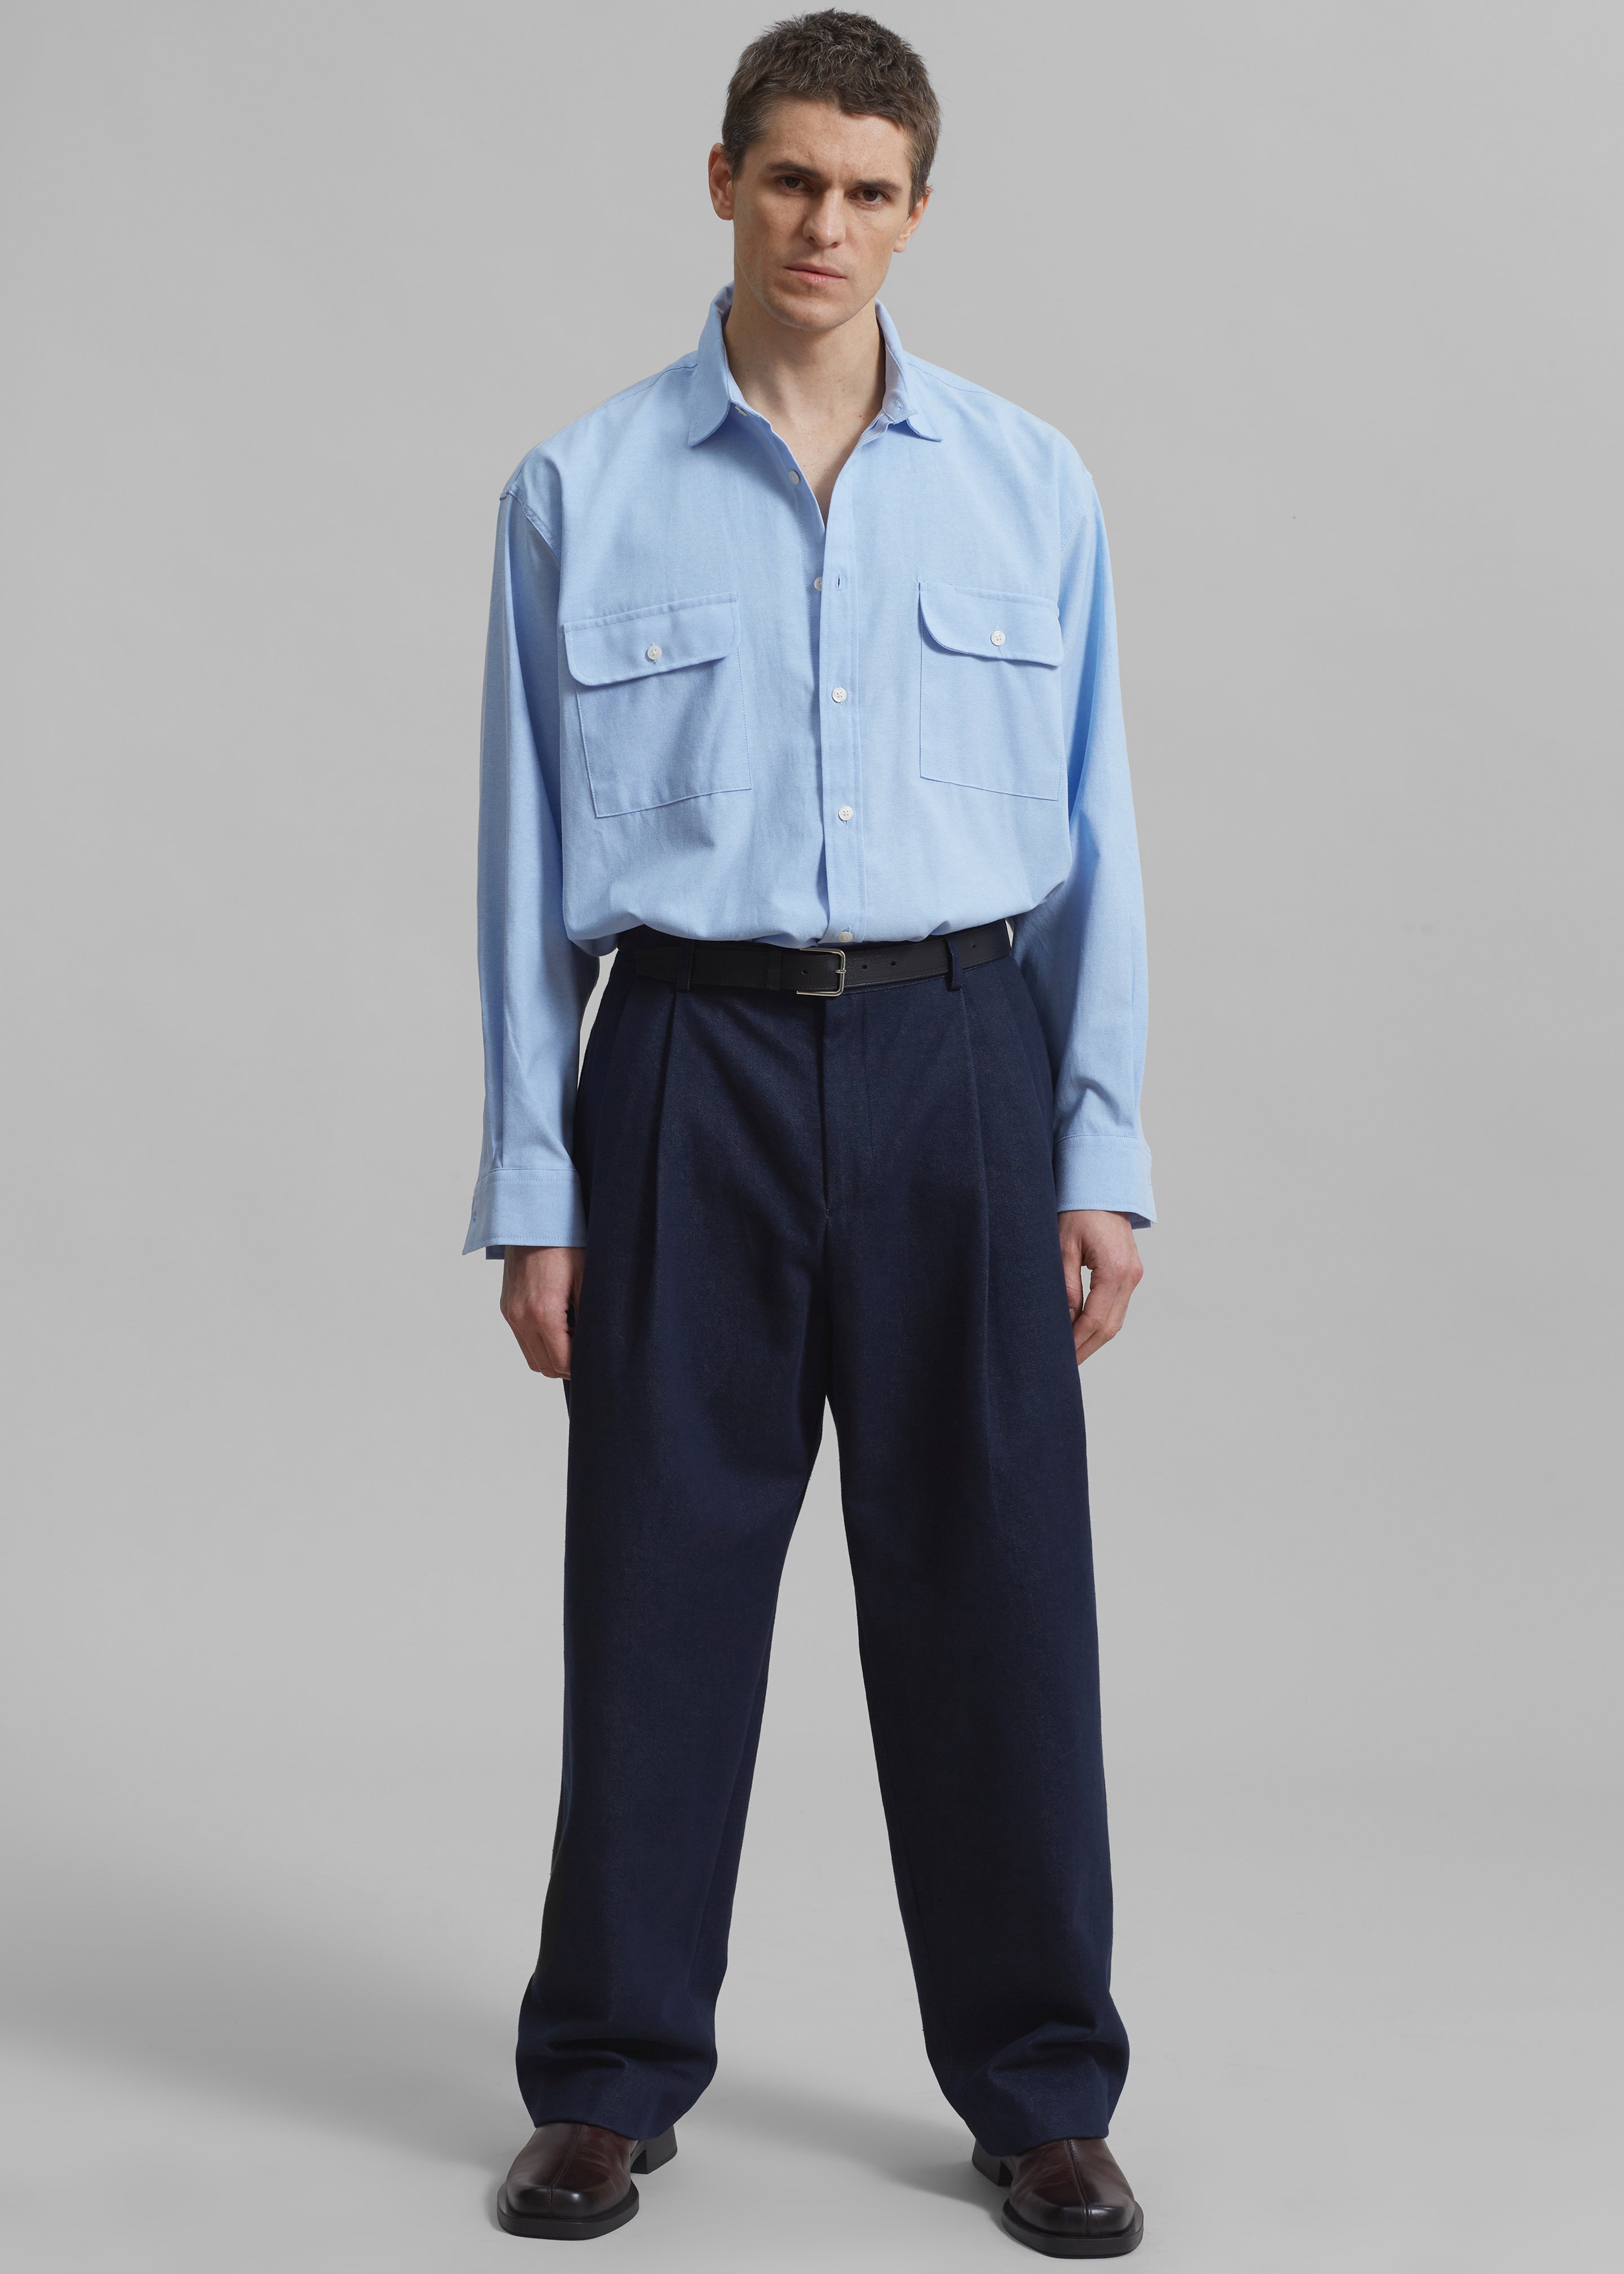 Alexander Button Up Shirt - Blue - 4